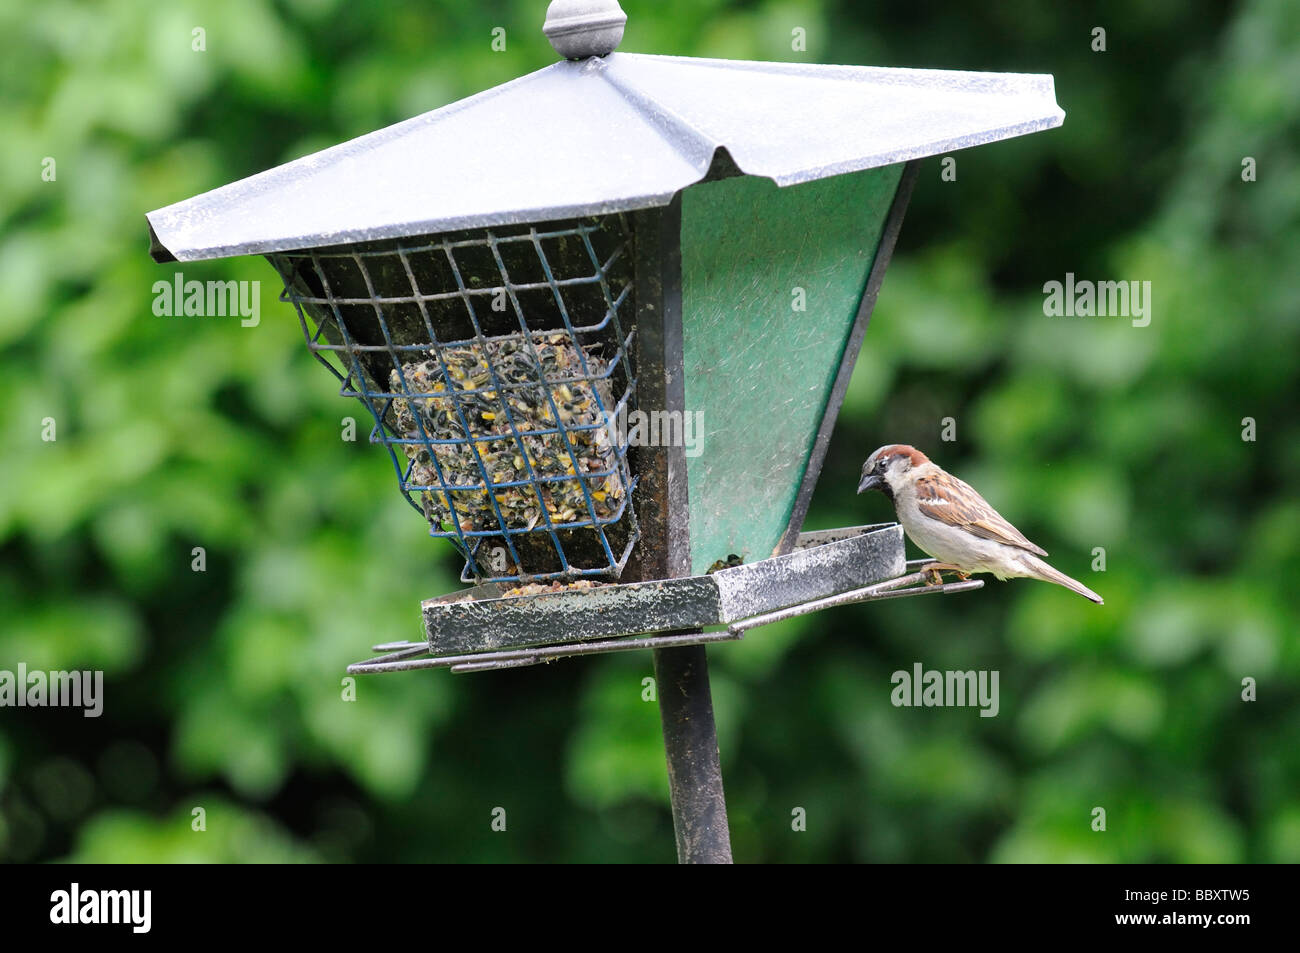 American sparrow feeding from a bird feeder in a urban garden Illinois USA Stock Photo